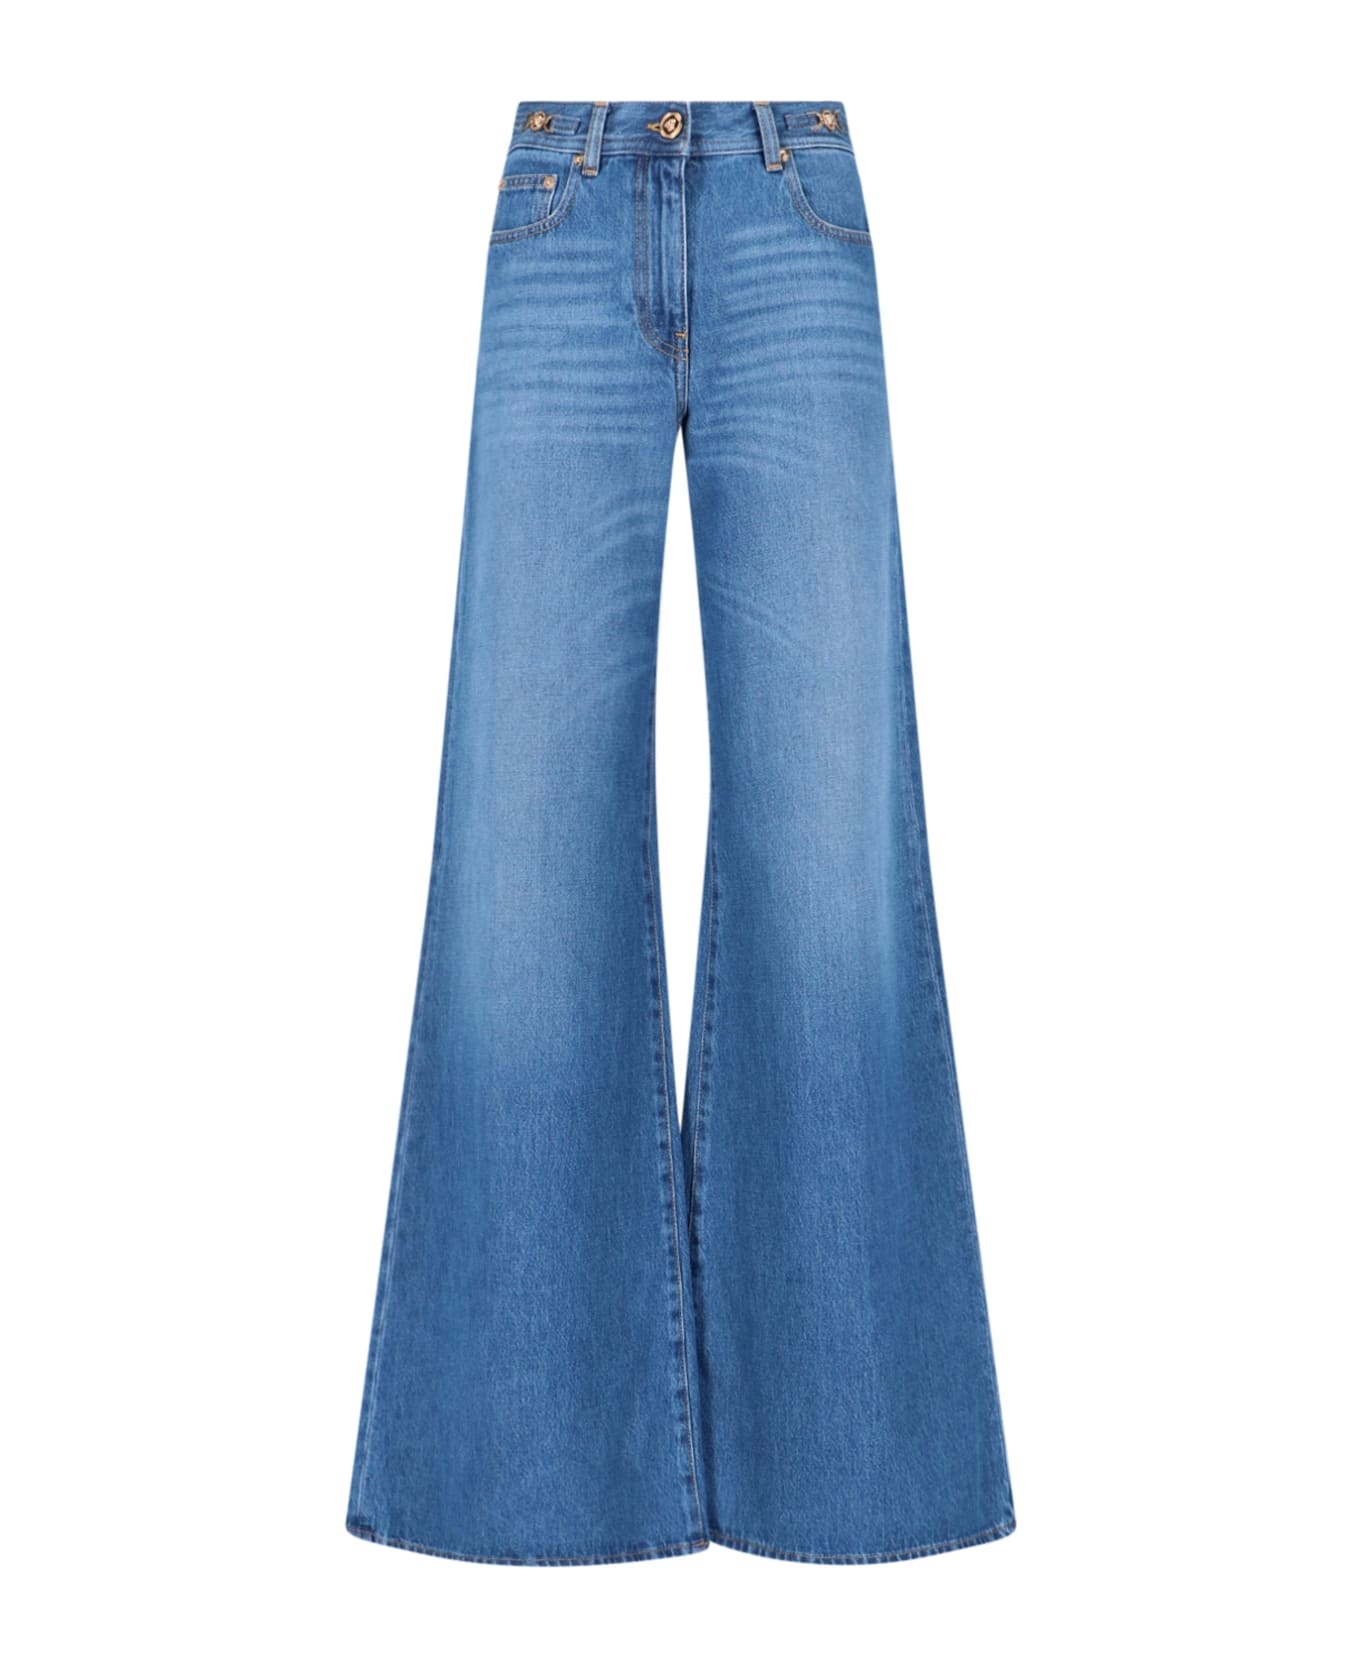 Blue Cotton Jeans - 1